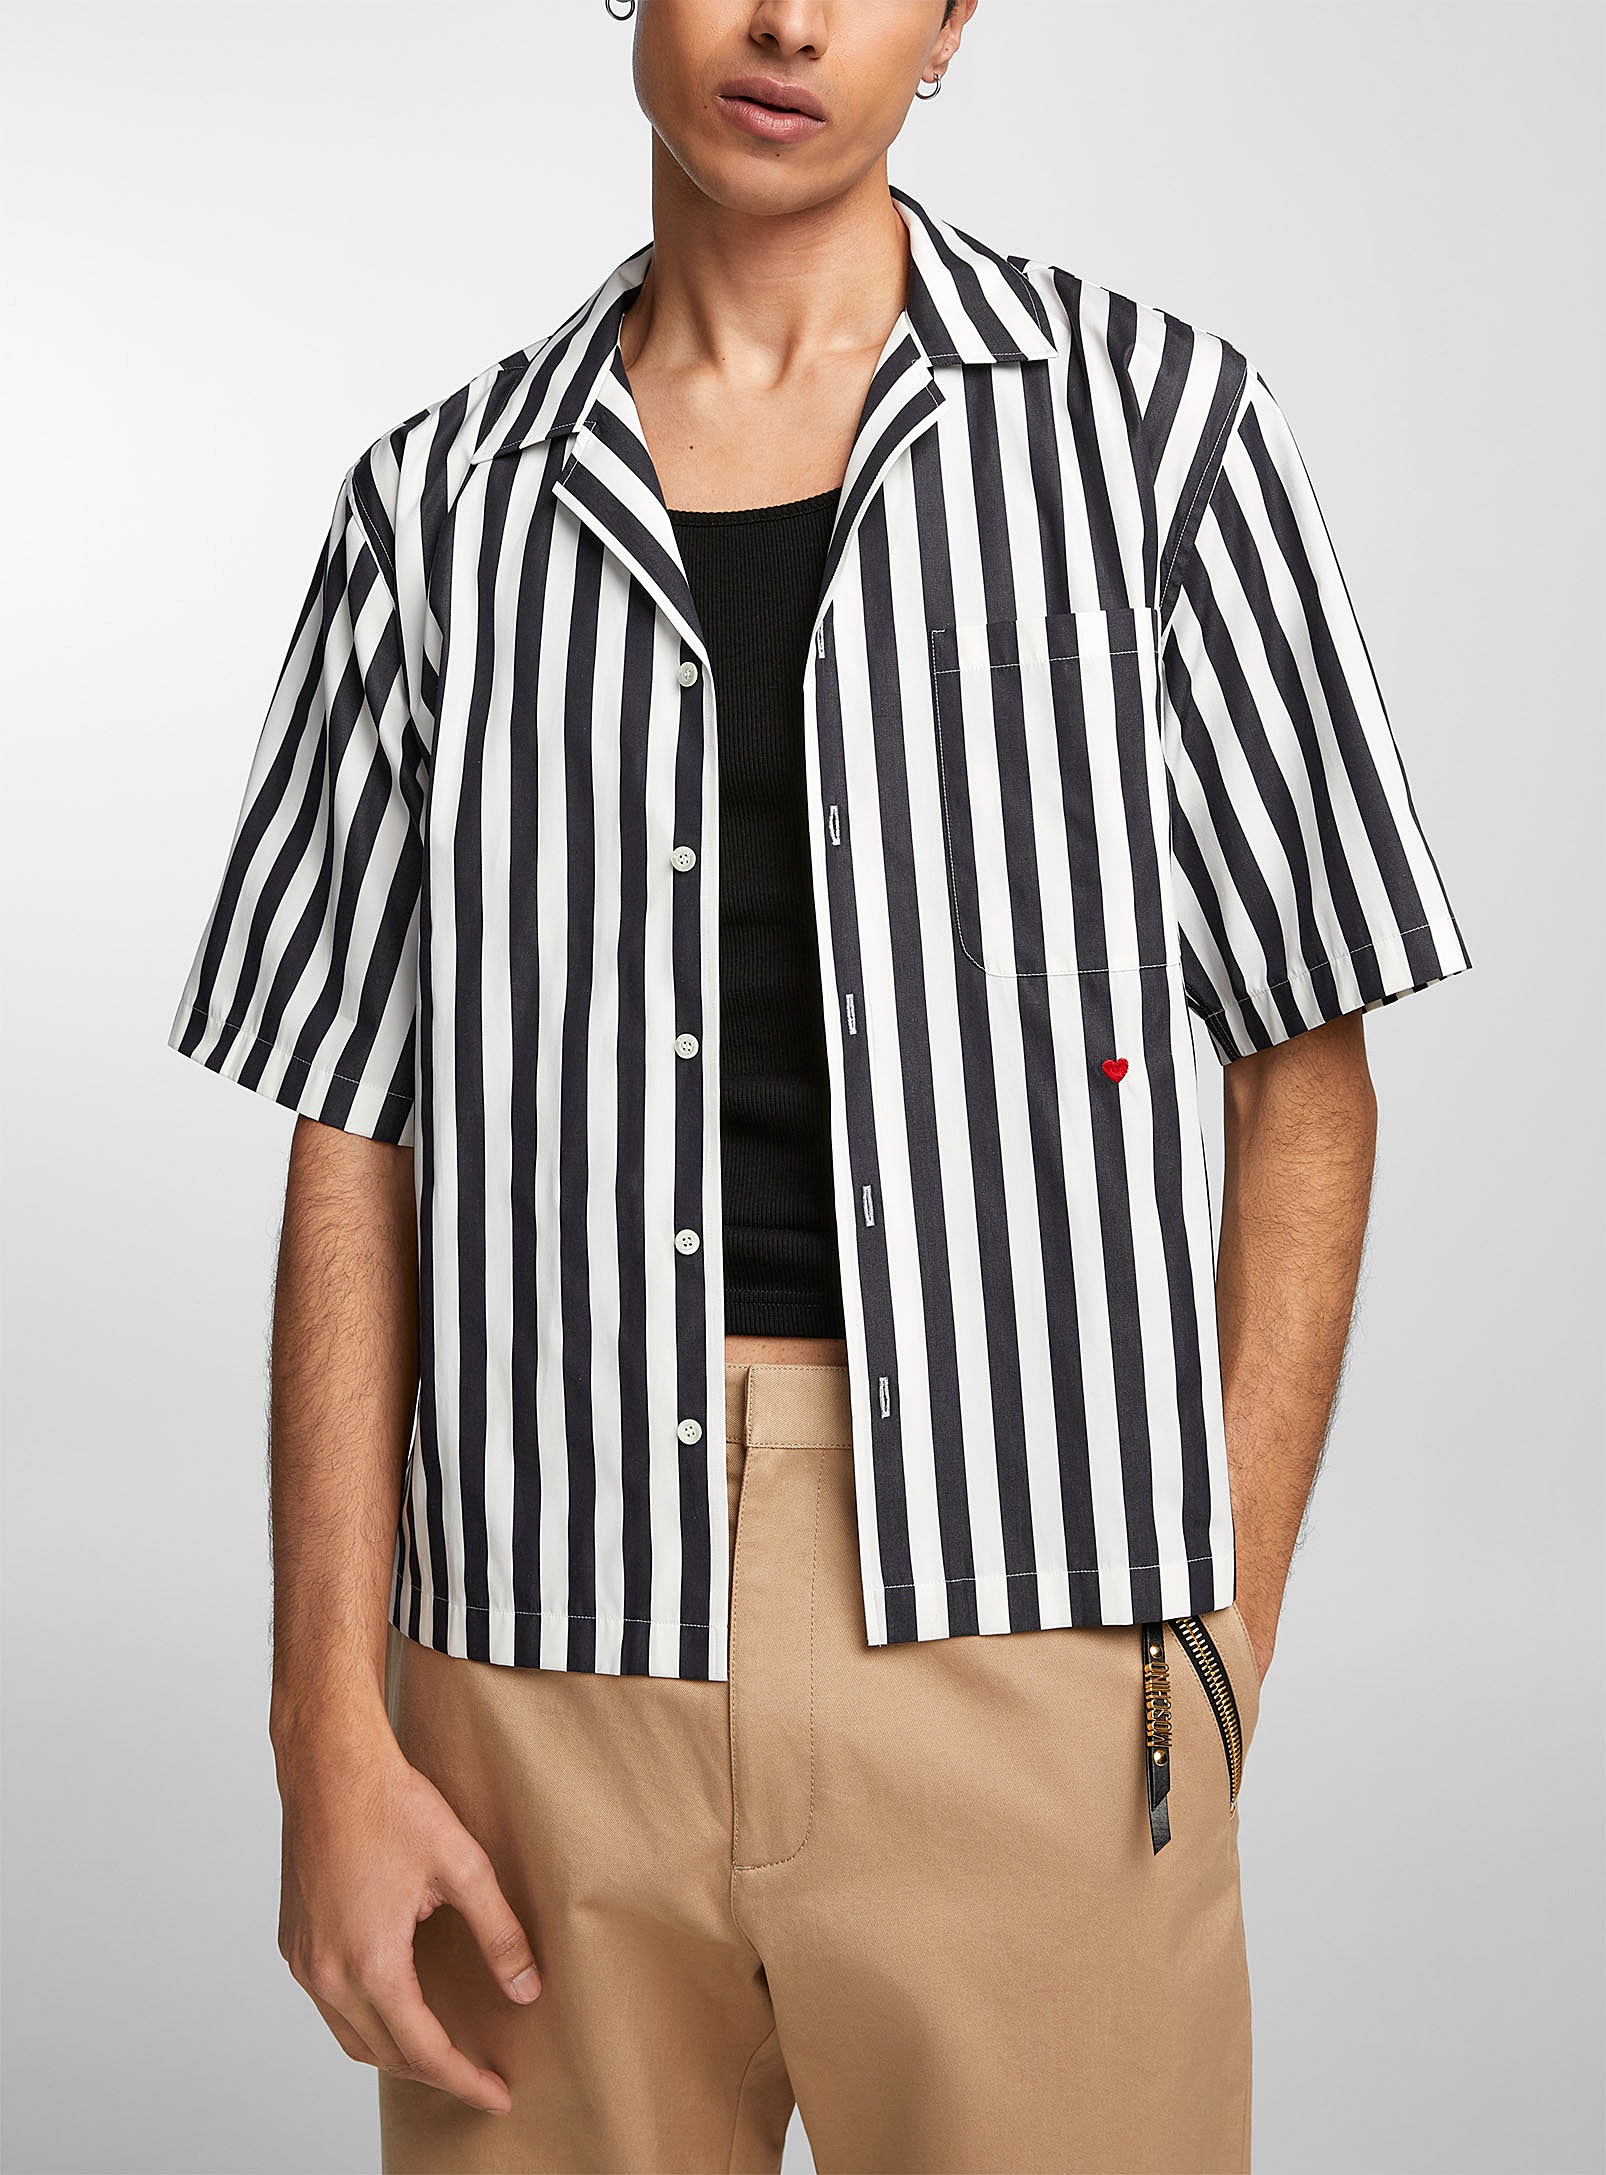 Moschino - La chemise lignes contrastantes